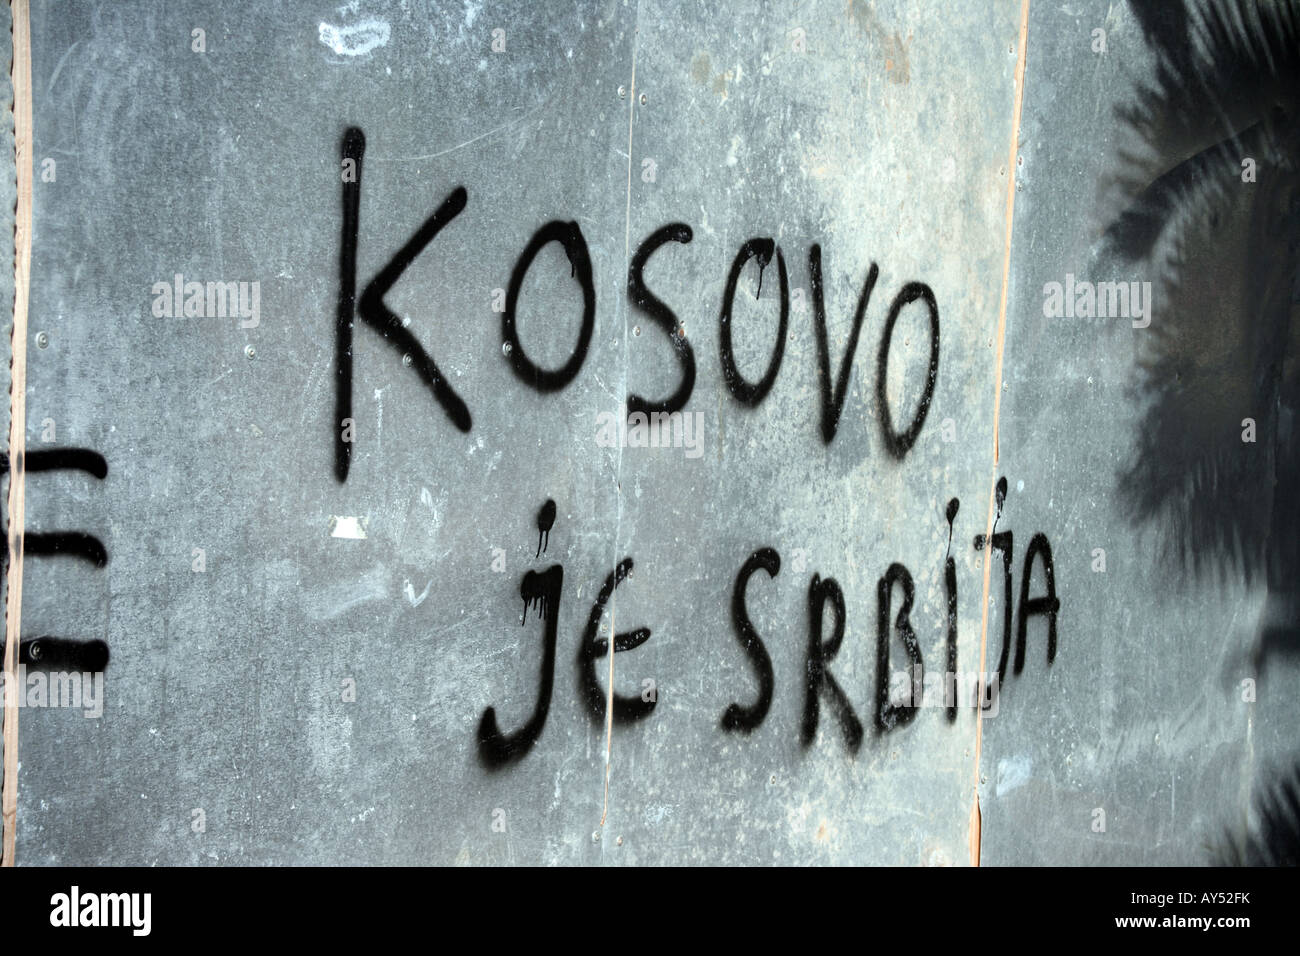 Kosovo grafitti in Montenegro Stock Photo